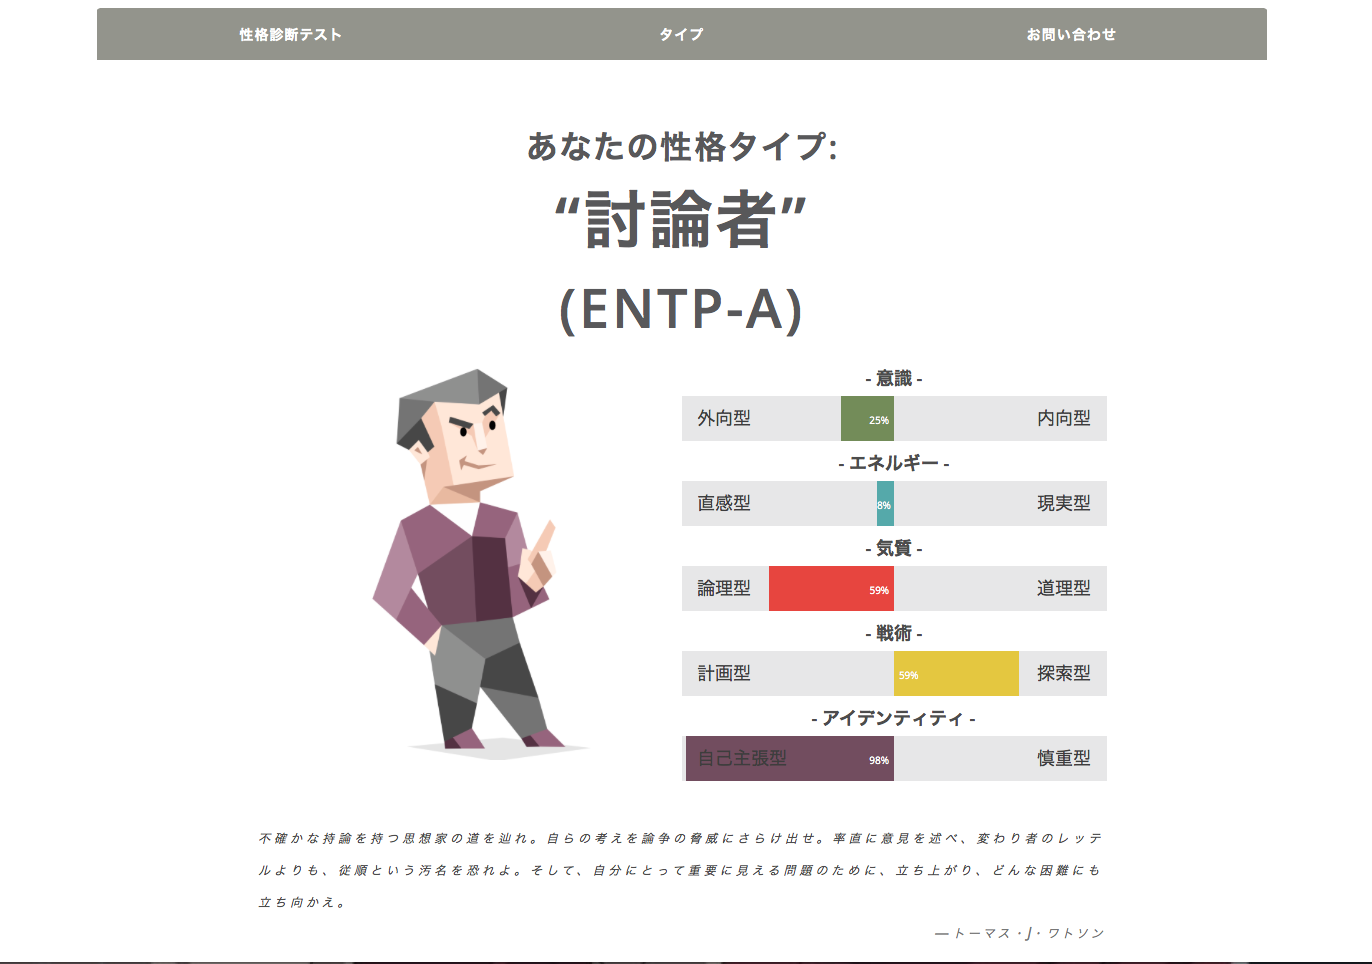 性格 entp ENTP（討論者）の特徴